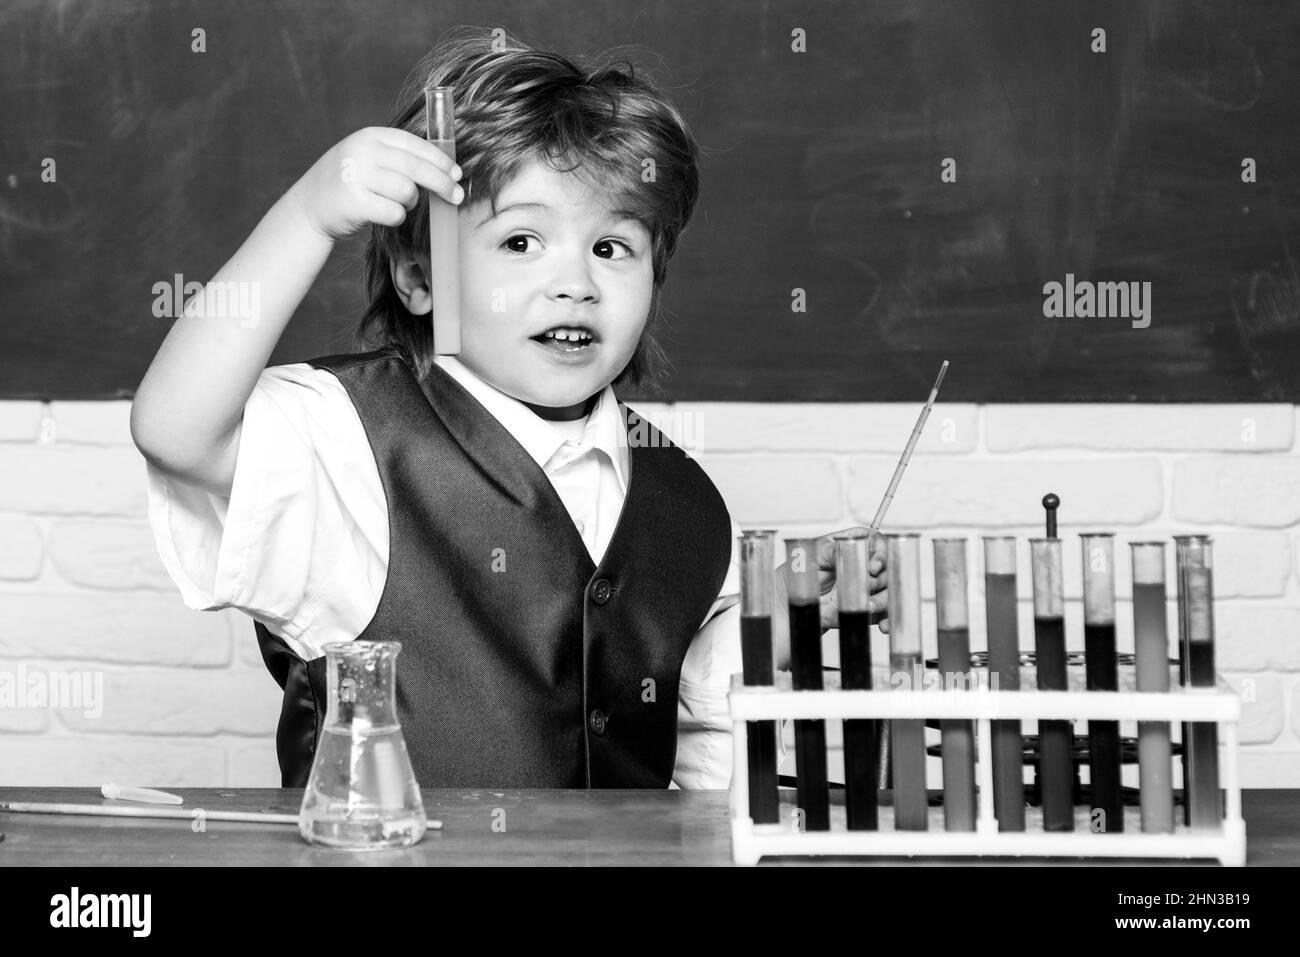 Torna a scuola. Preschooler. Hanno condotto un nuovo esperimento in chimica. Lezione di chimica. Il bambino sta imparando in classe sullo sfondo della lavagna Foto Stock